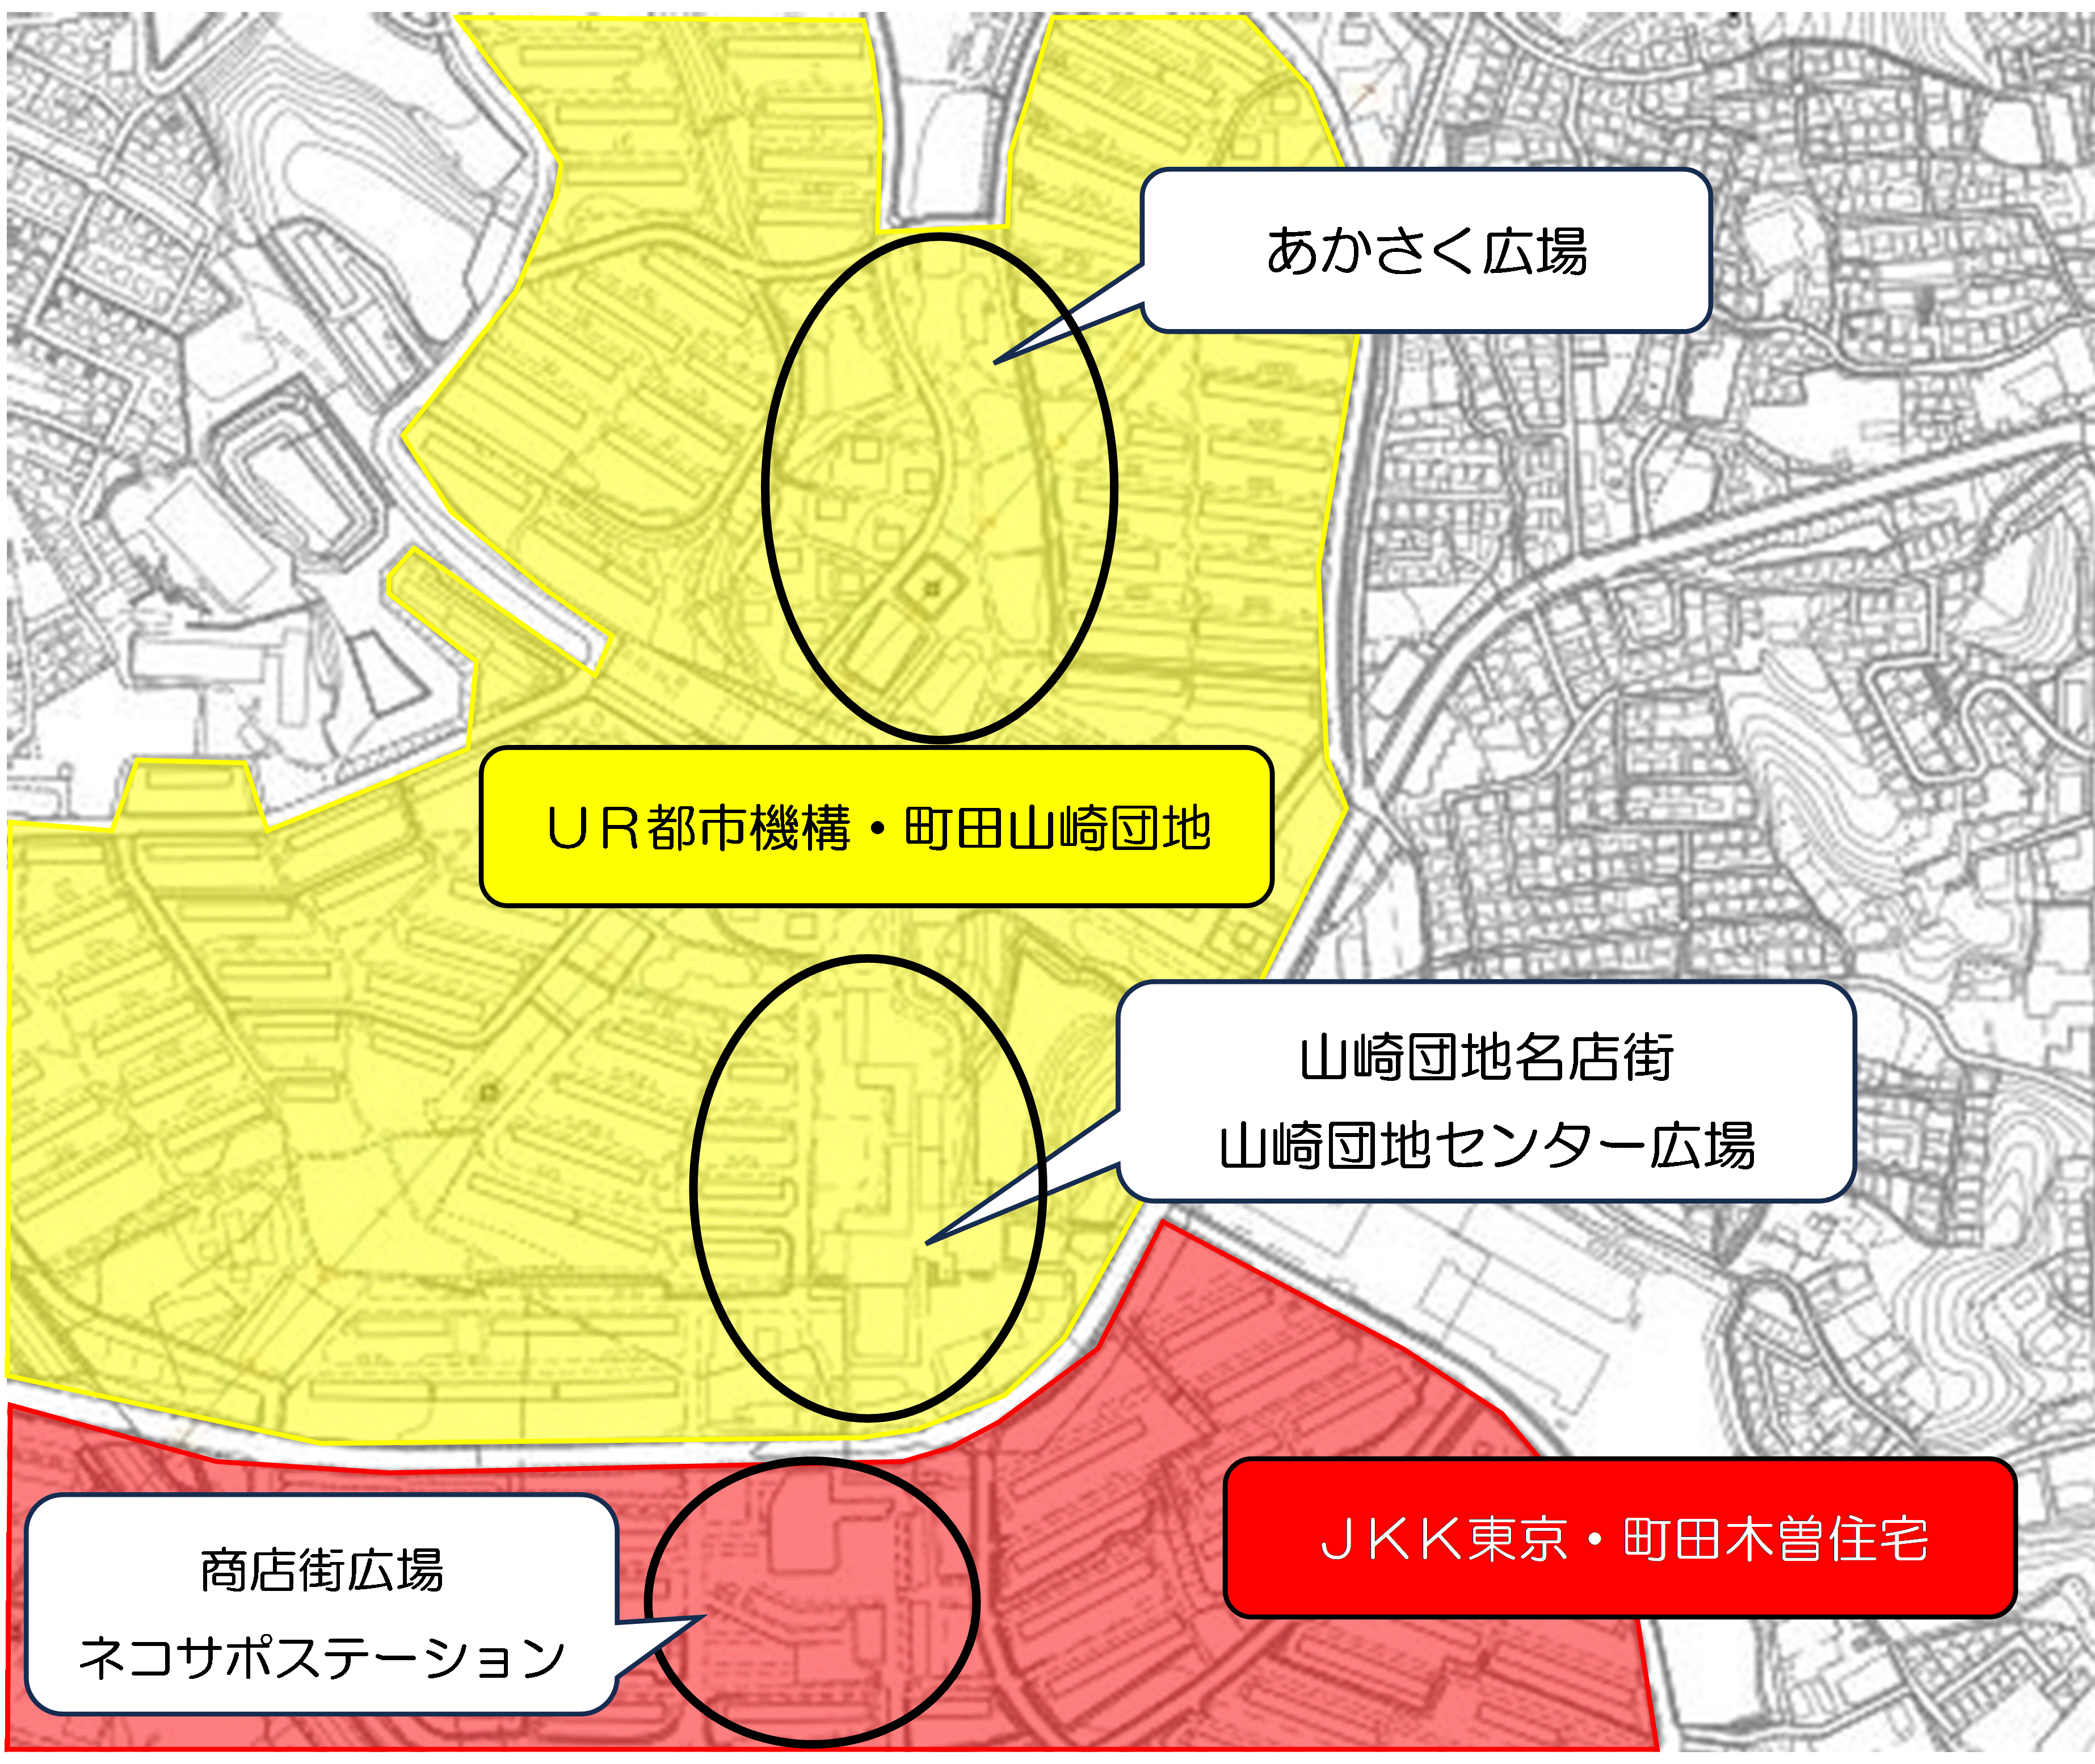 イベント会場地図（黒〇で囲った部分がイベント会場）